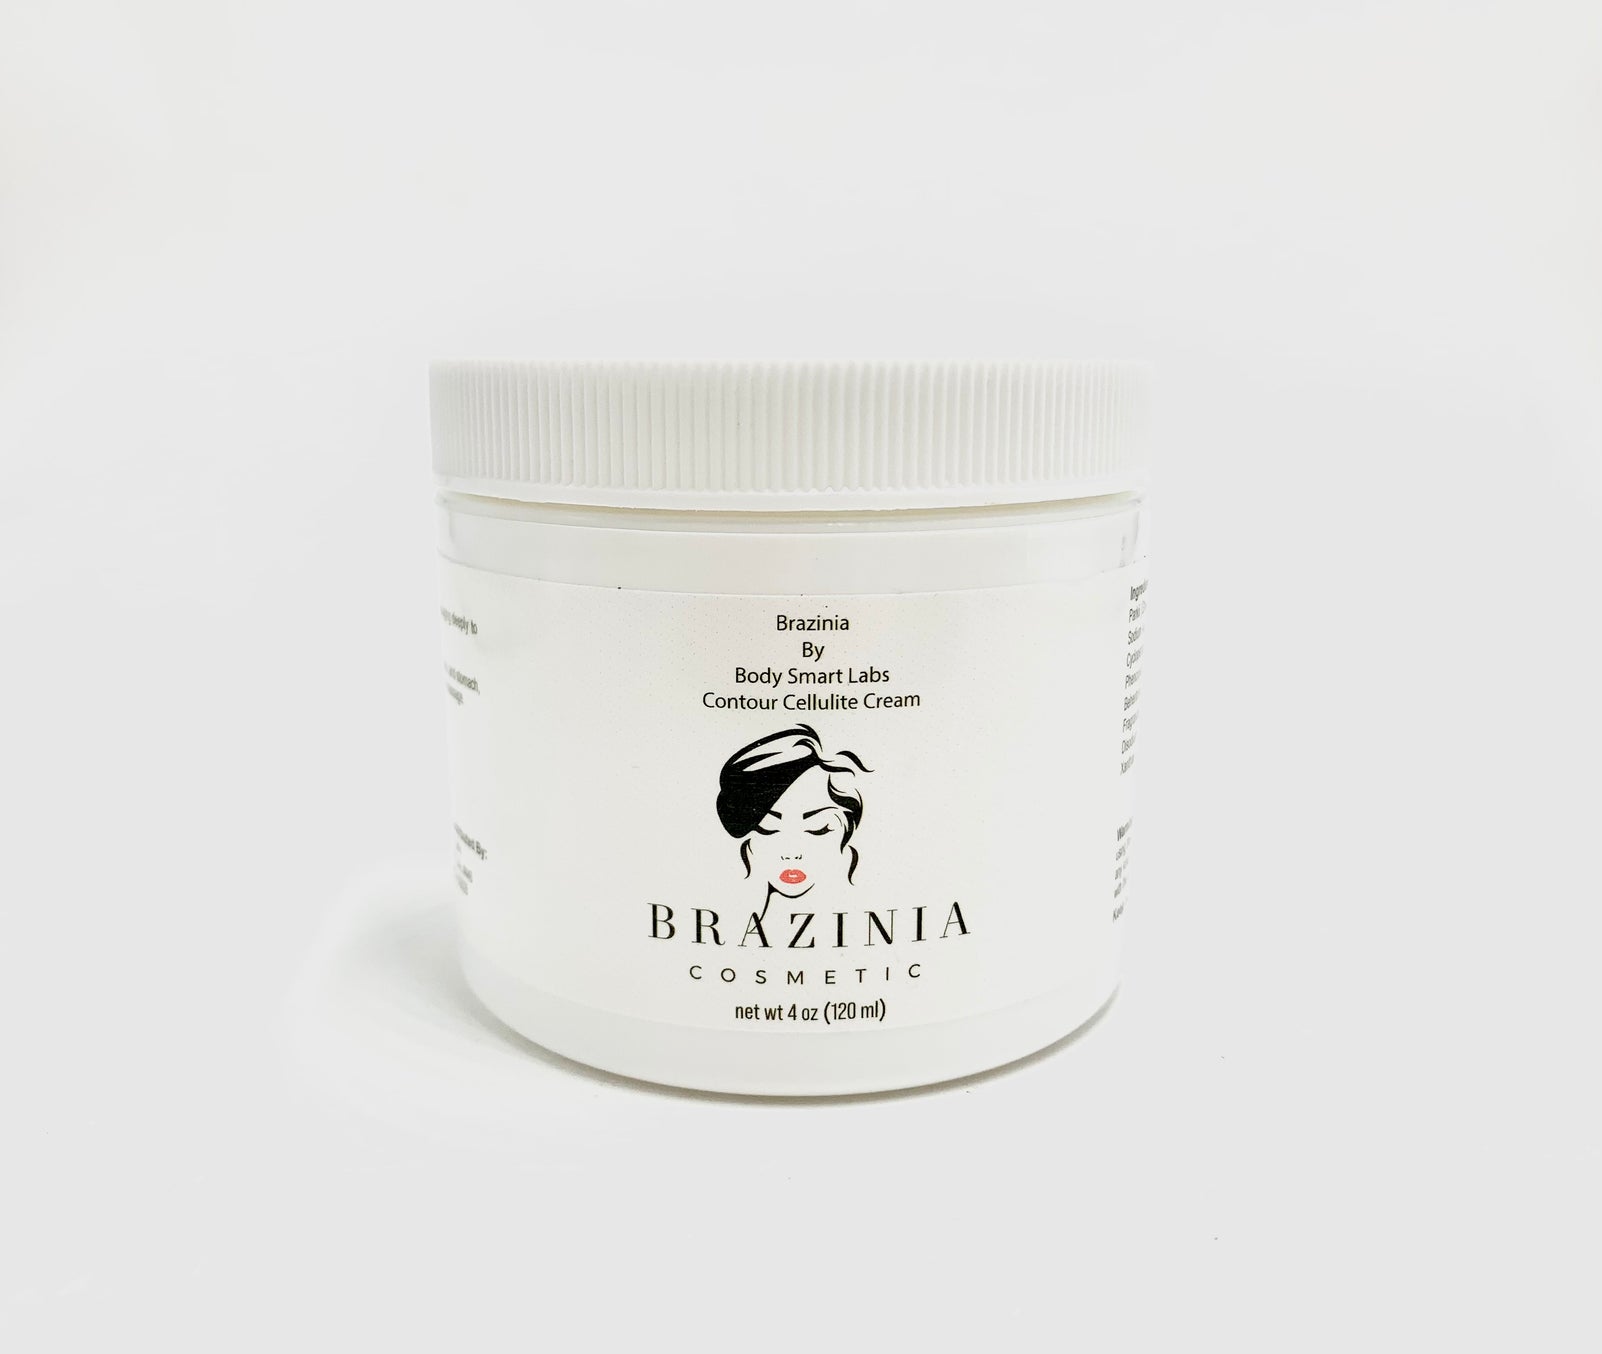 Brazinia Body Cellulite Contour Cream by Body Smart Labs 4 oz